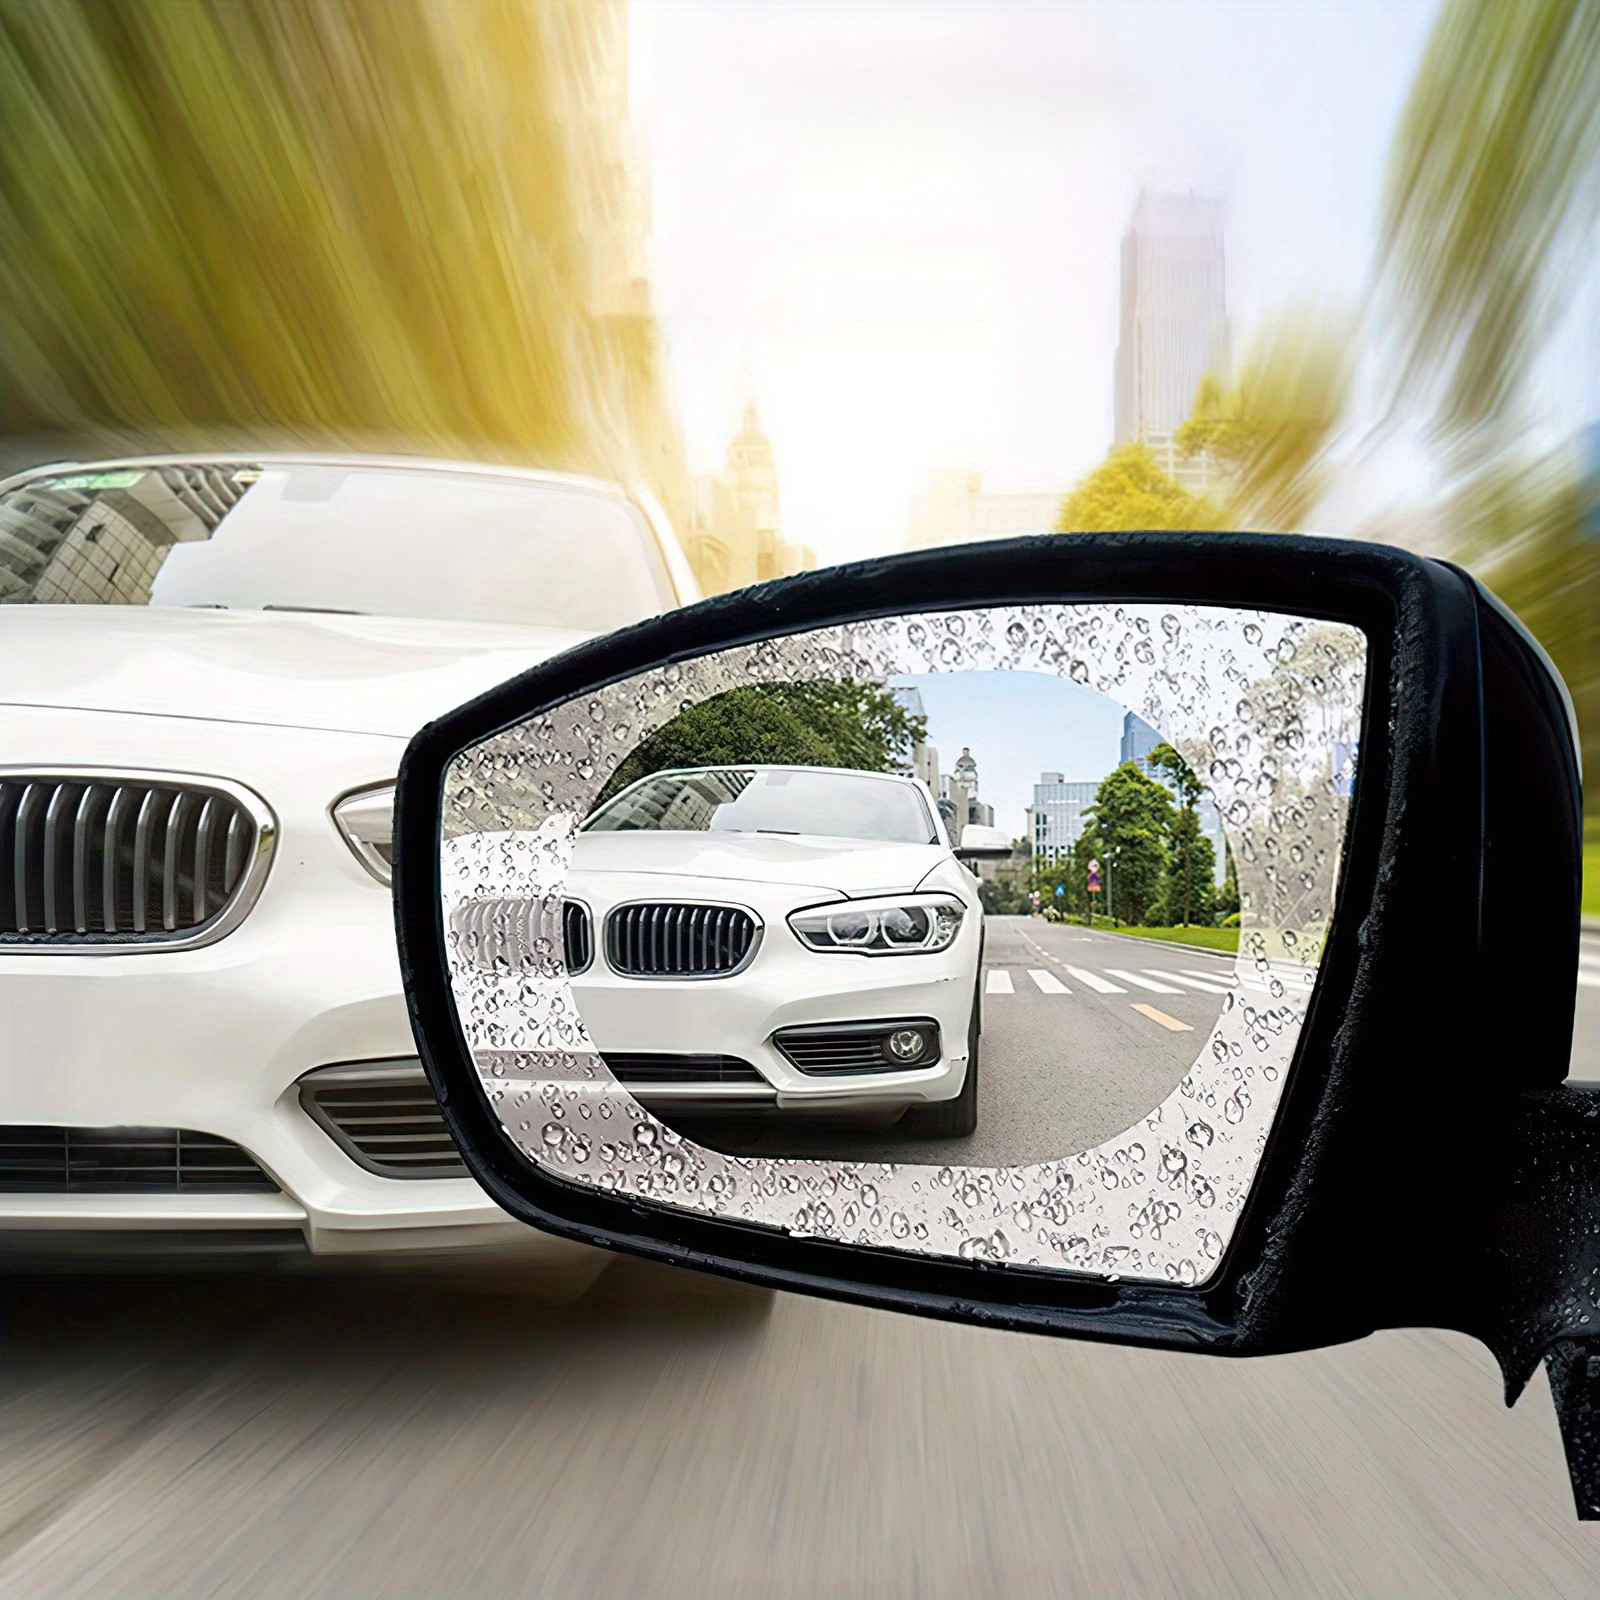 4Pcs Auto Rückspiegel Film,Auto Rückspiegel Folie, HD Wasserdicht  Anti-Beschlag-Spiegel Schutzfolie für Geeignet für die Meisten Autos für  Autospiegel